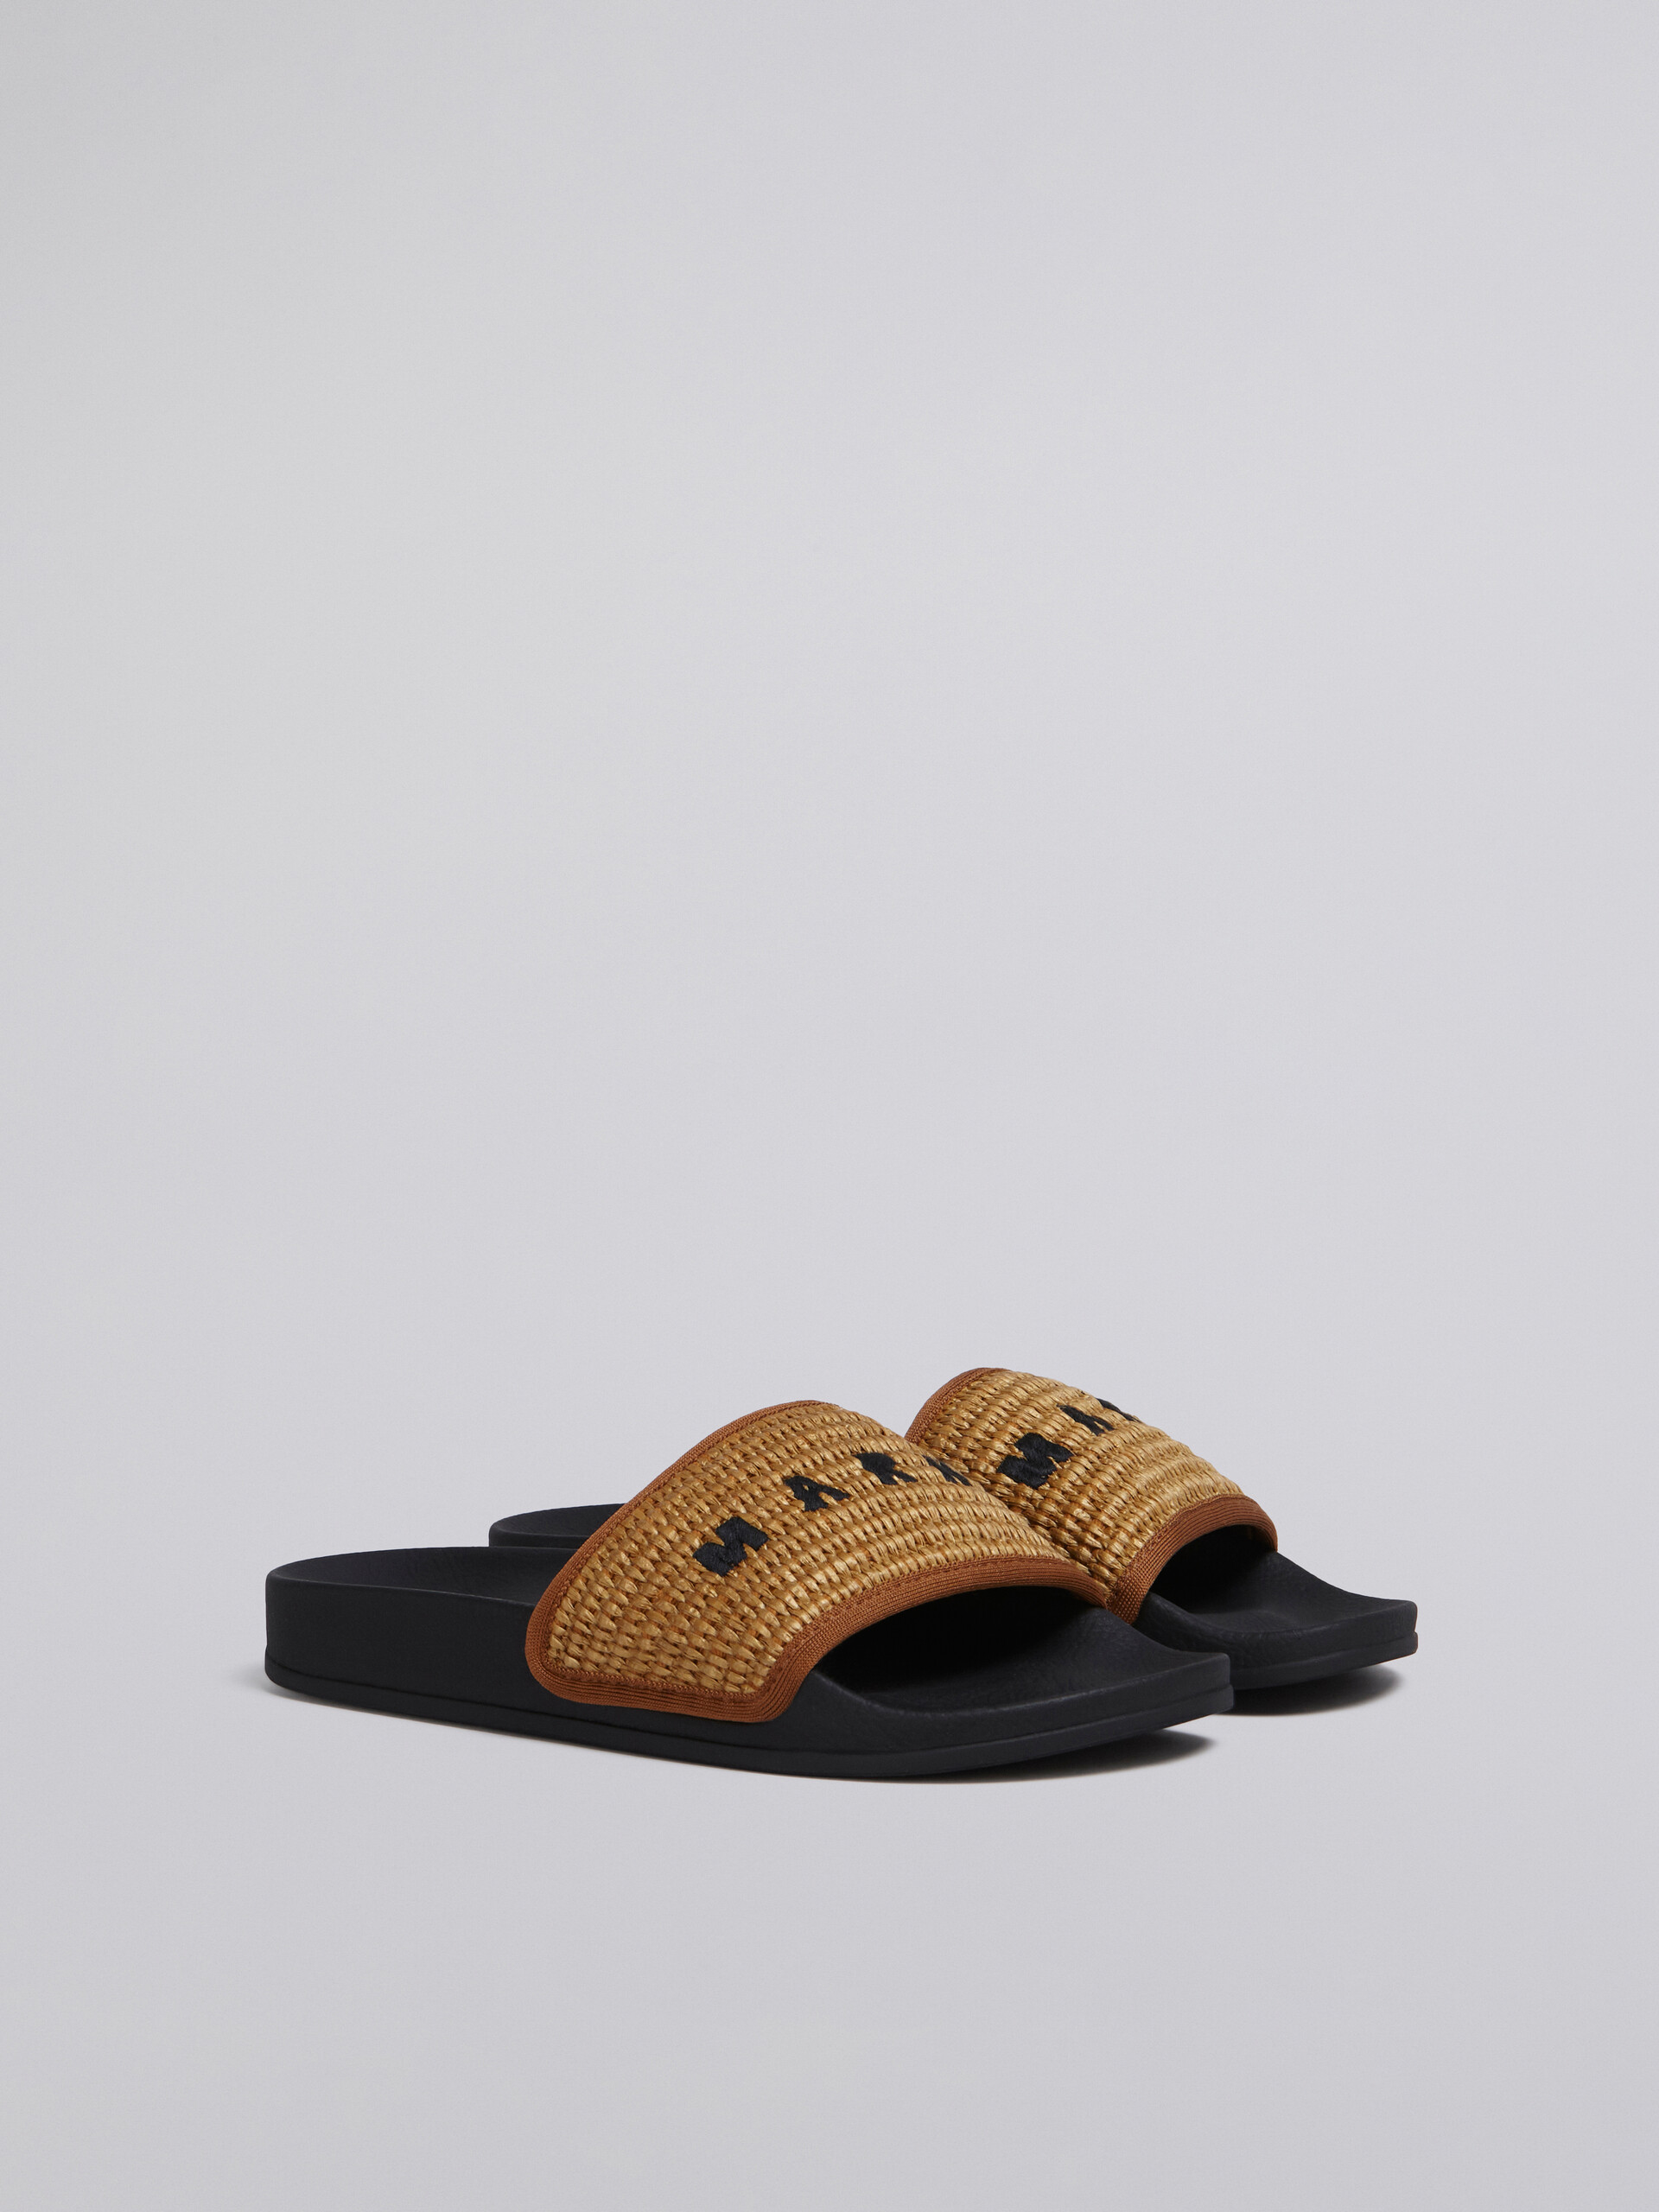 브라운 라피아 샌들 - Sandals - Image 2